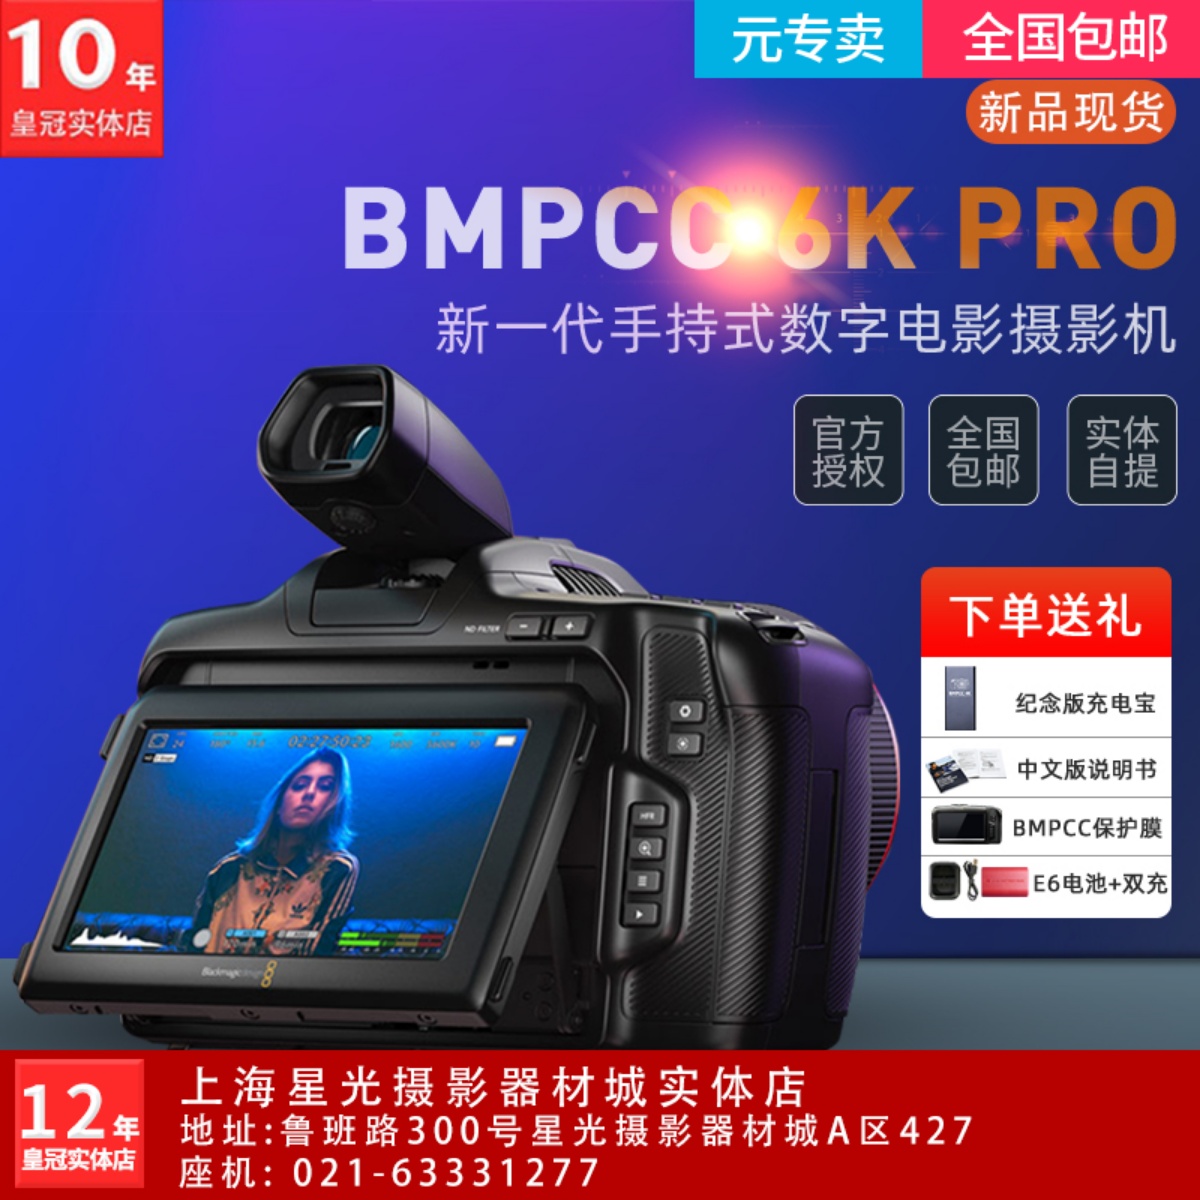 BMD BMPCC 6K G2 PRO专业级摄像机Blackmagic手持电影机正品行货